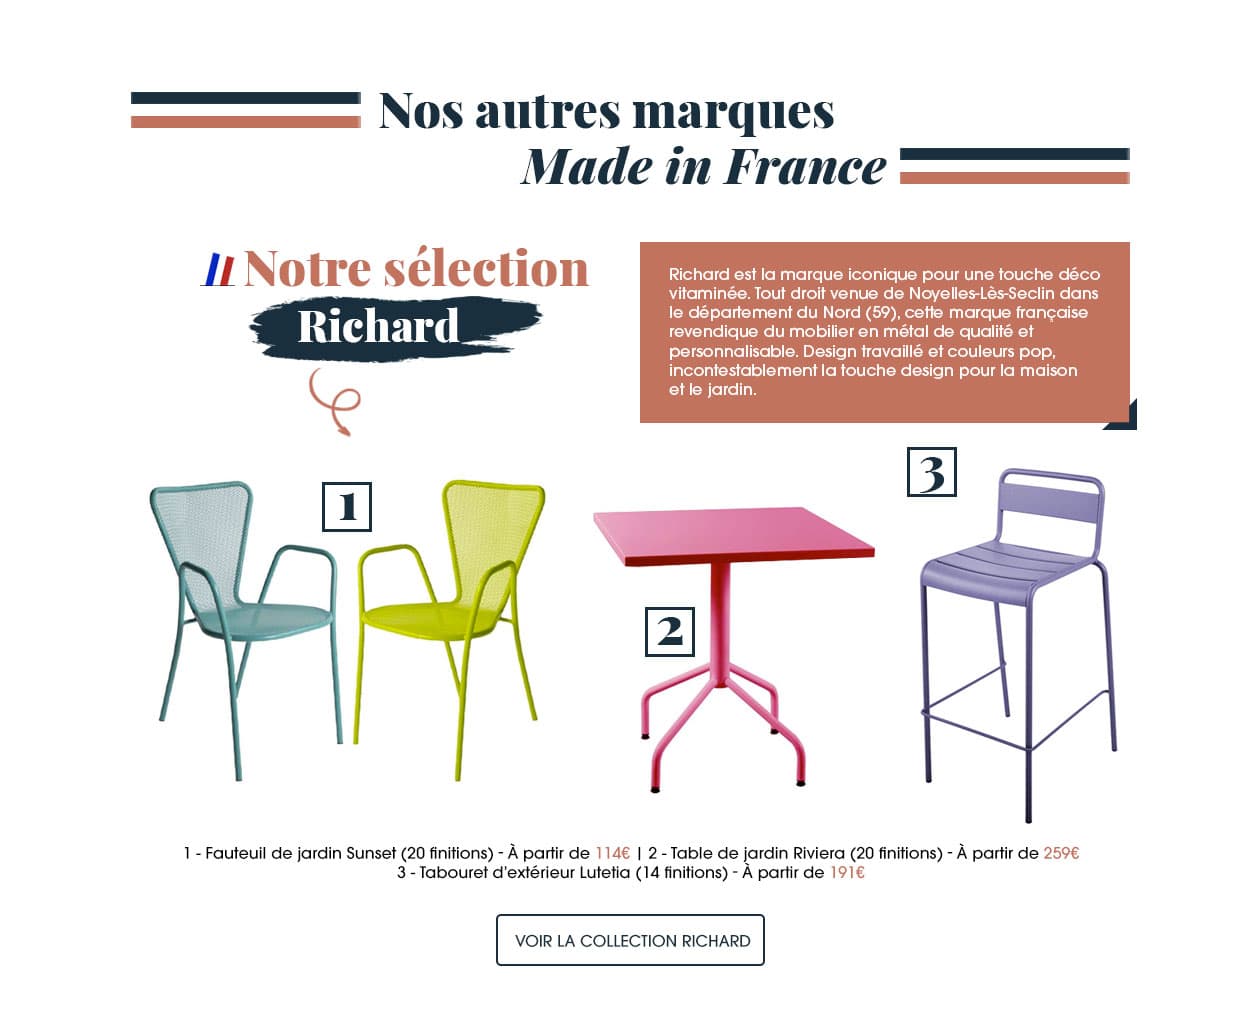 Découvrez aussi d'autres marques 100% made in France avec le fabricant de mobilier Richard, la marque iconique pour une touche déco vitaminée.